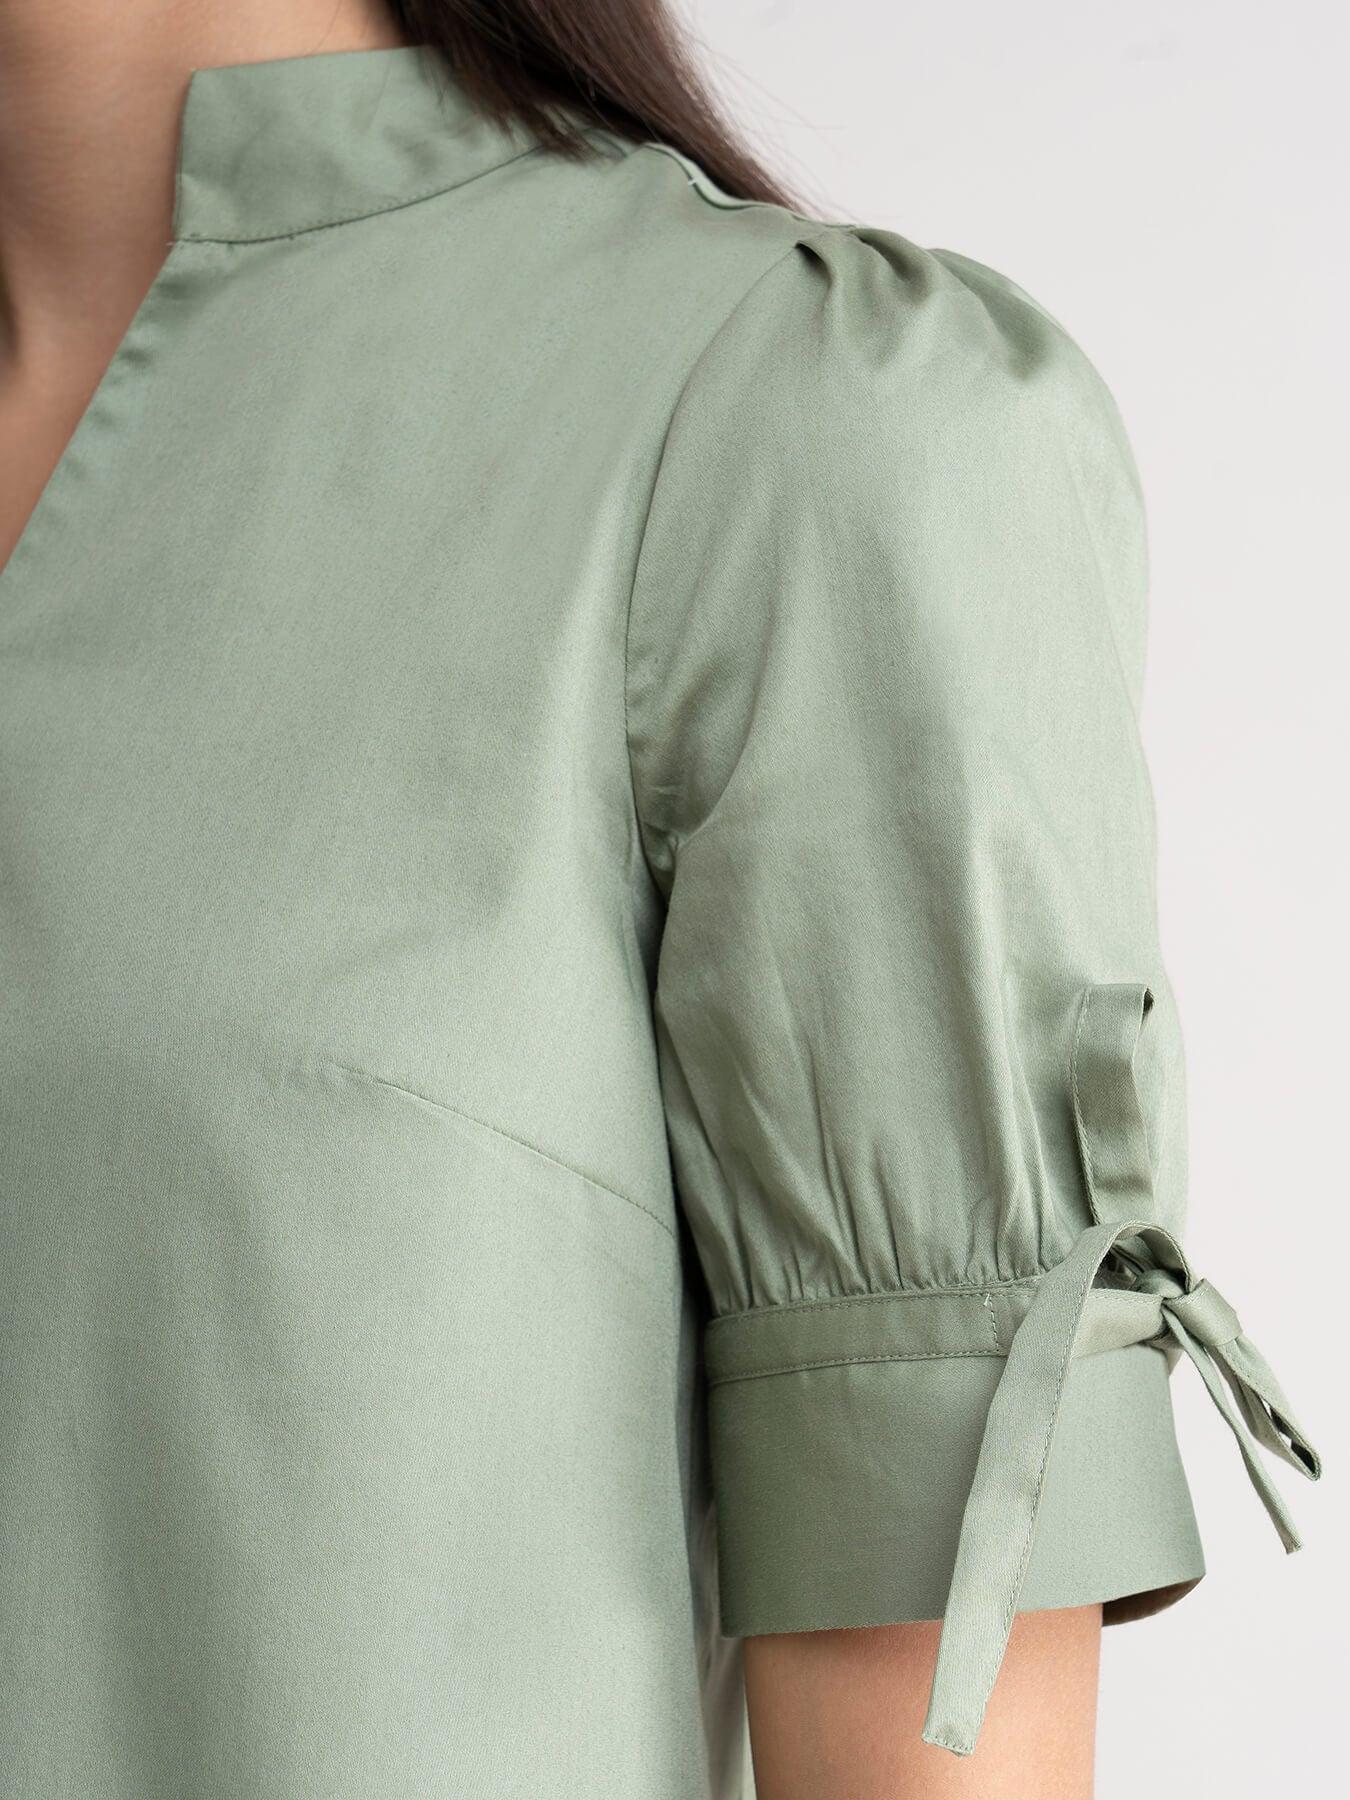 Cotton Tie Up Sleeve Top - Pista Green| Formal Tops